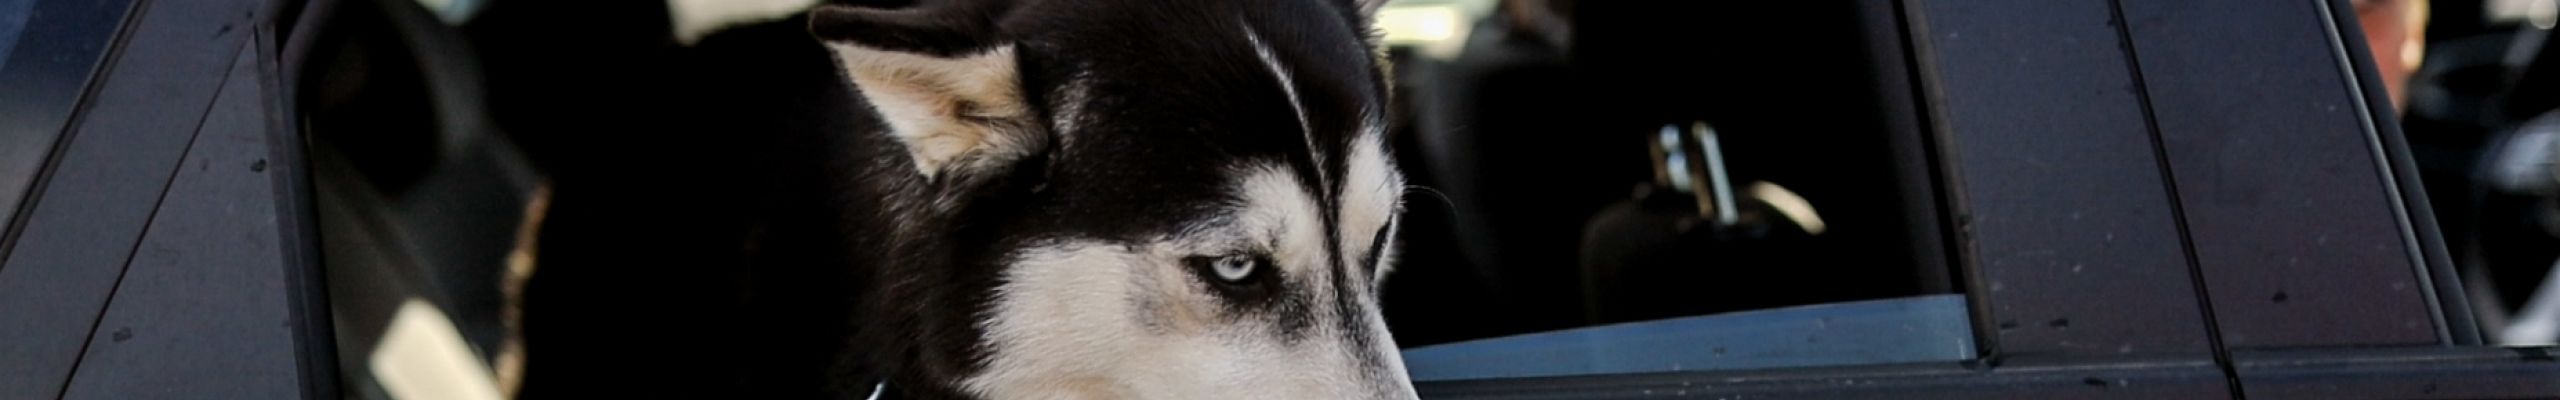 CAMEA CAR RADÍ – Ako prevážať psíka